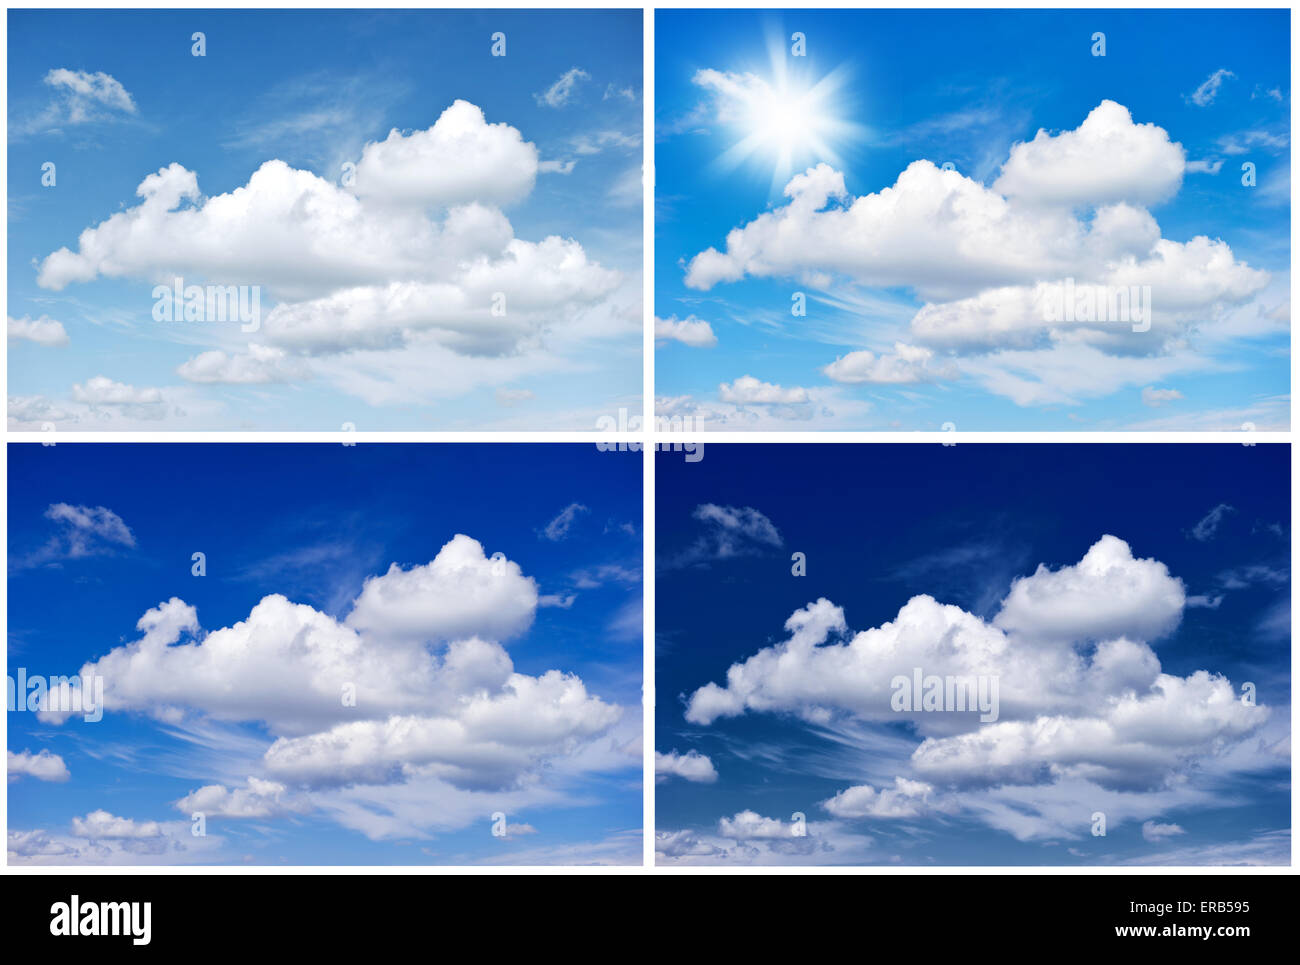 Himmelshintergrund für Winter, Frühling, Sommer, Herbst. Vier Jahreszeiten. Umwelt-Konzept Stockfoto